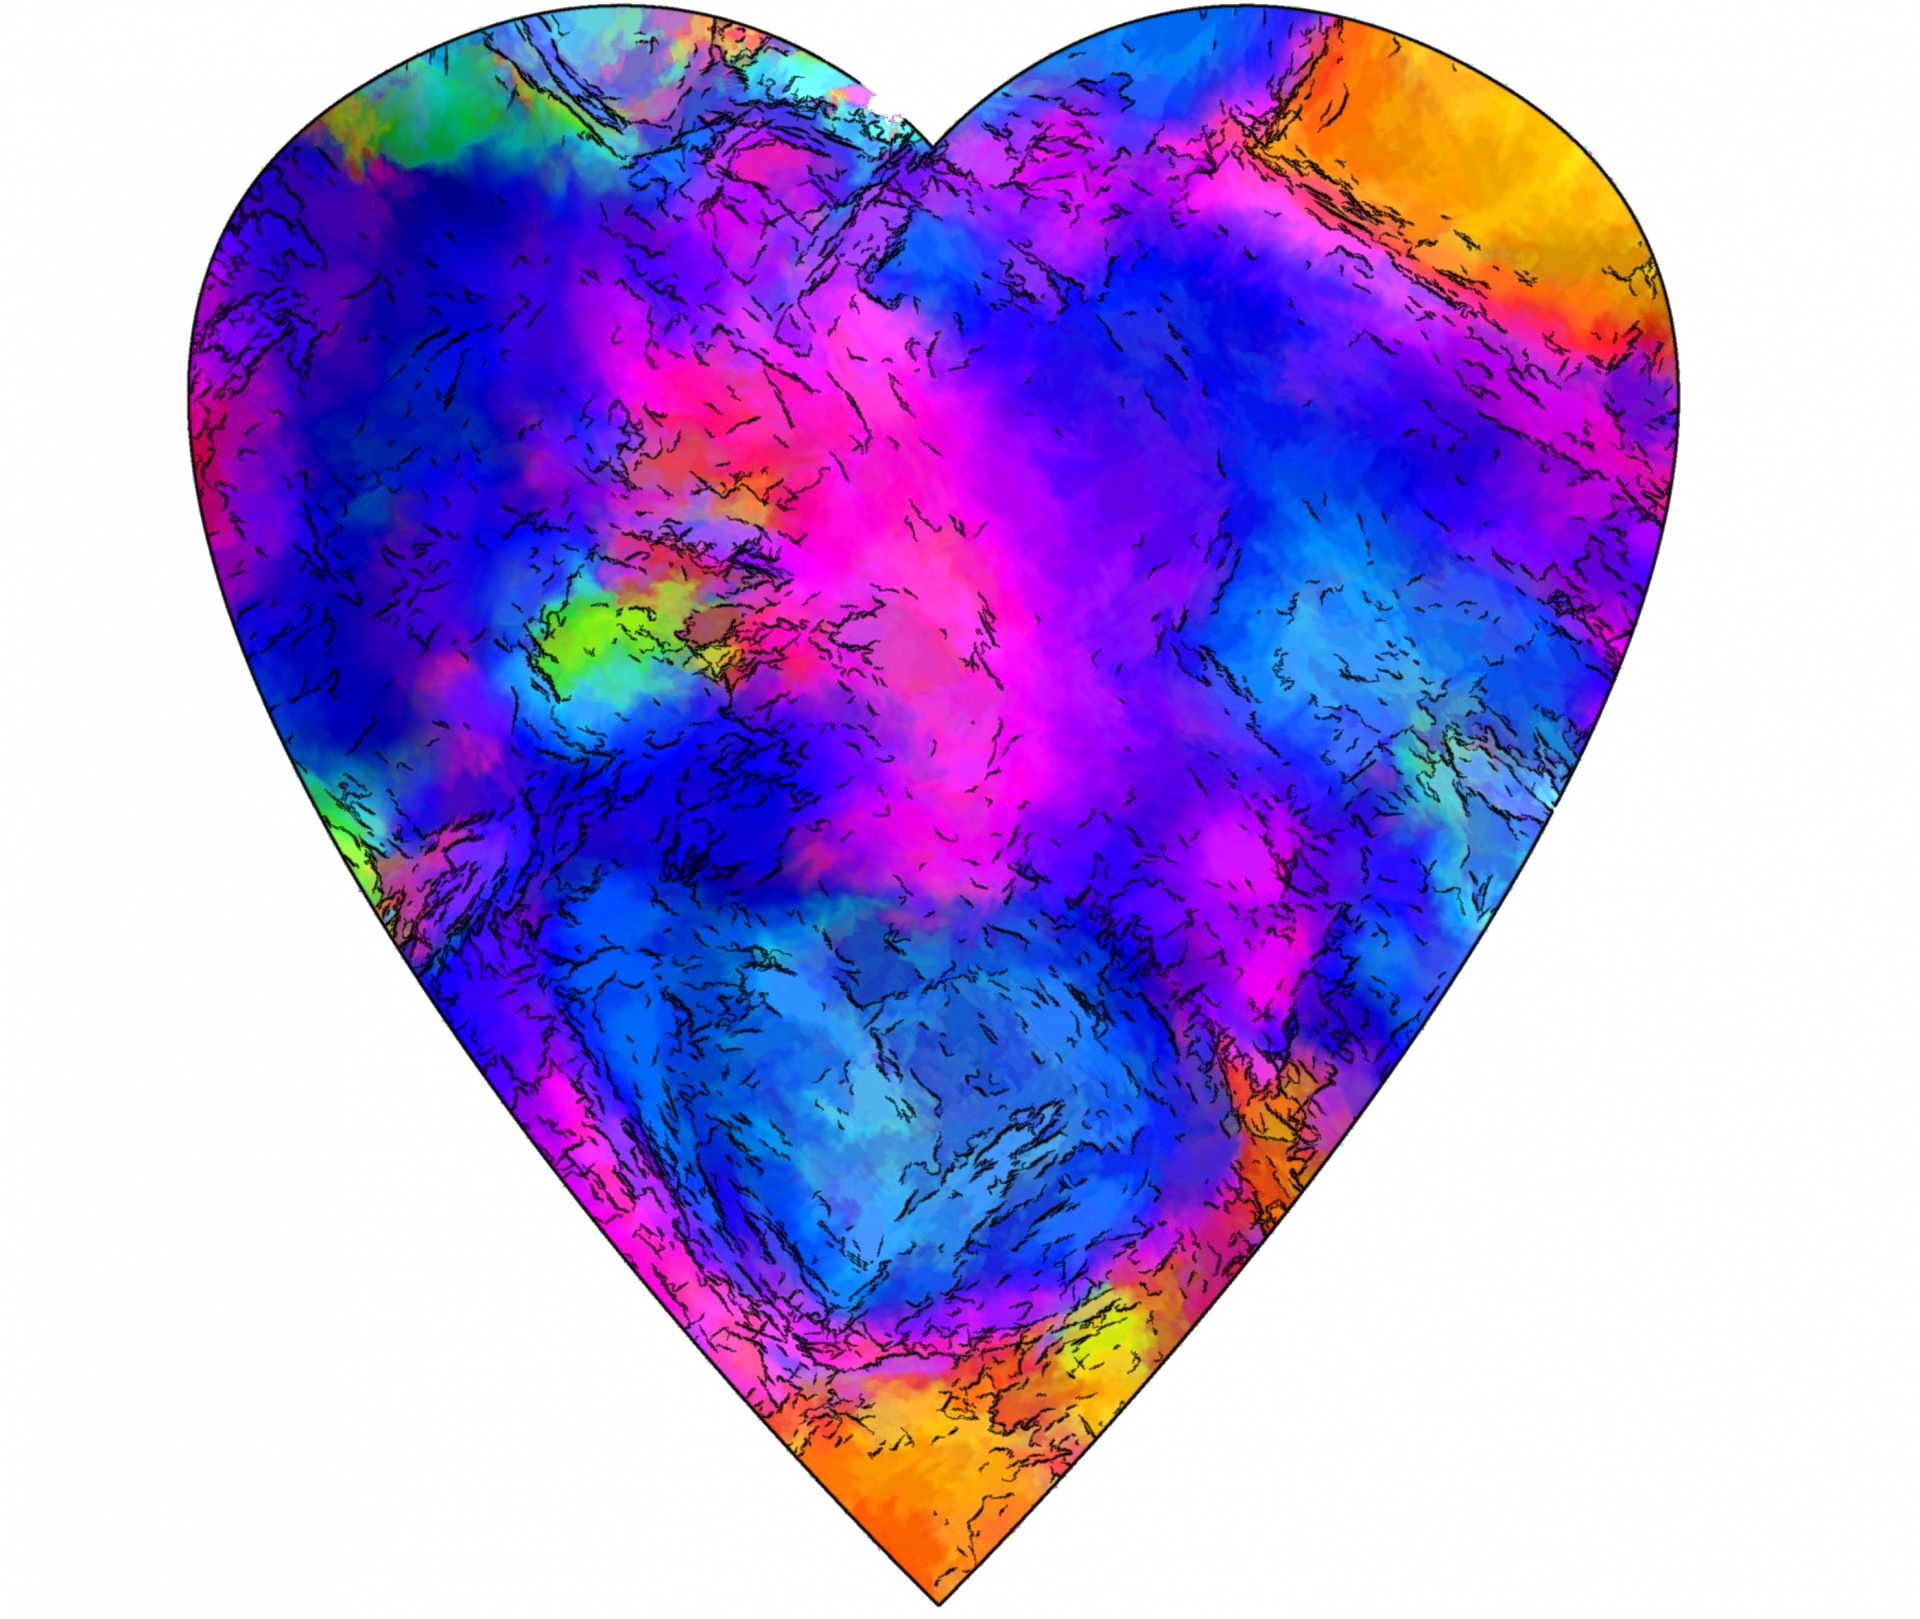 heart hearts texture free photo